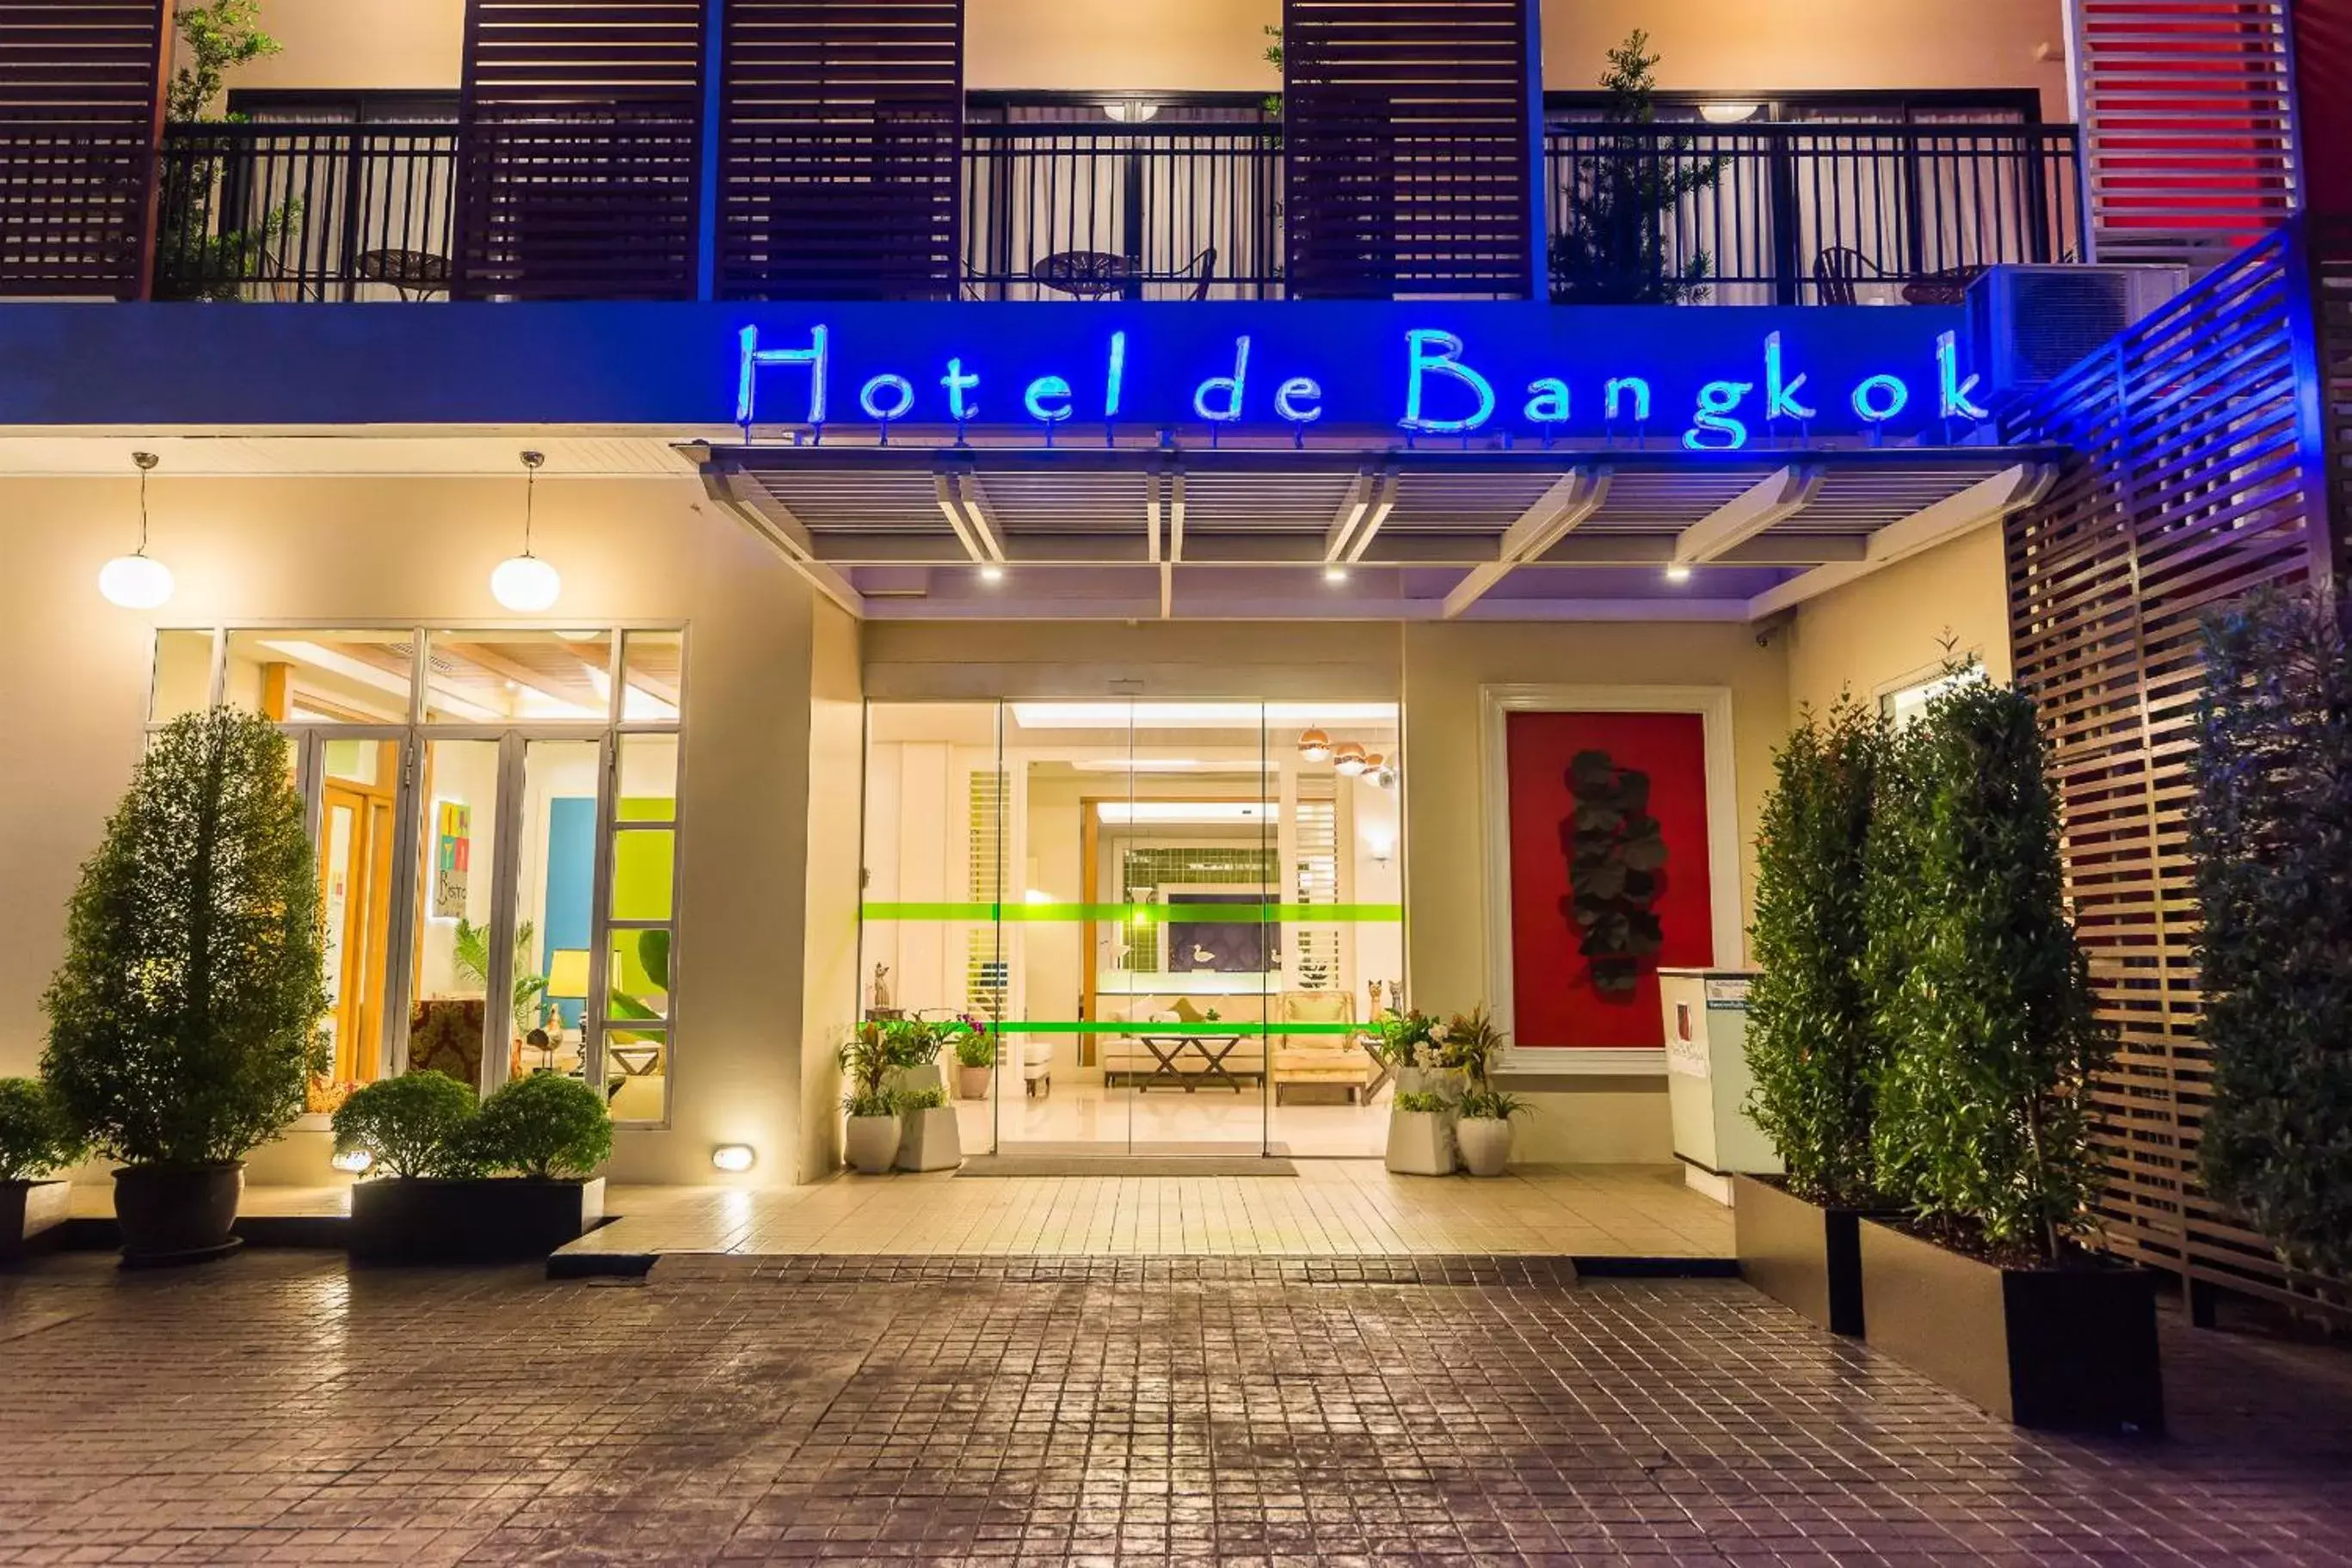 Facade/entrance in Hotel De Bangkok